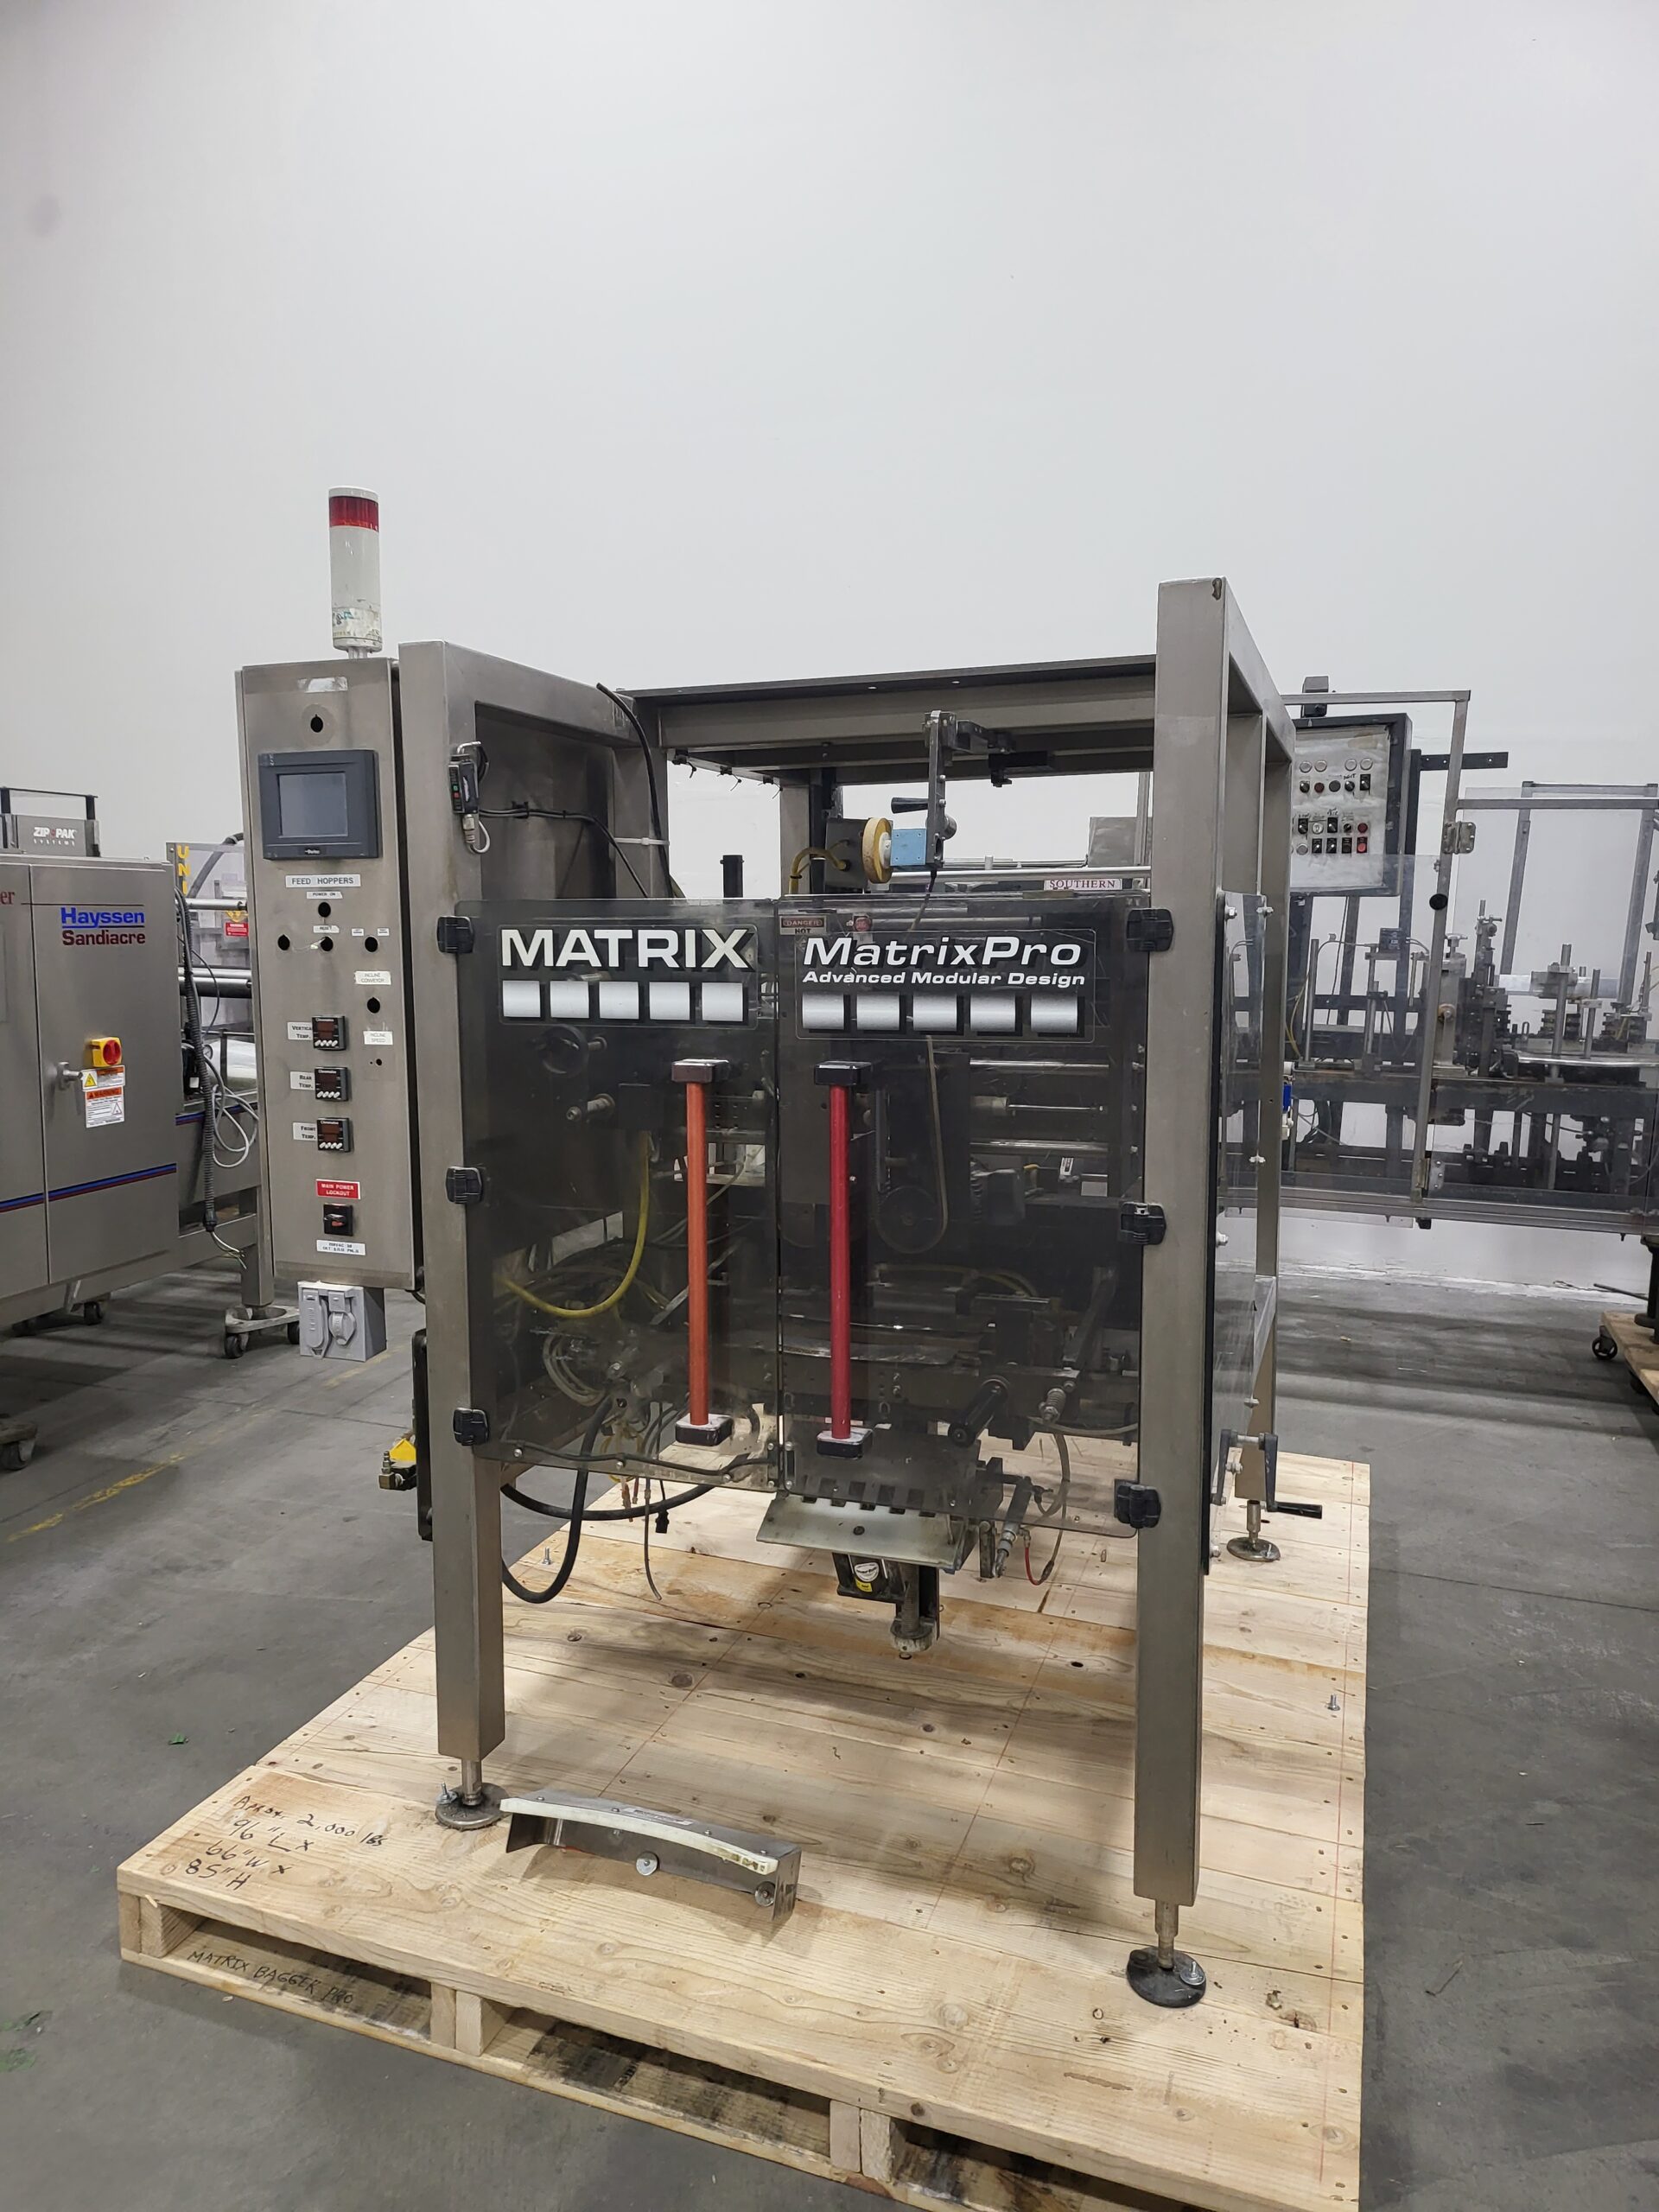 Matrix Pro VFFS packaging machine